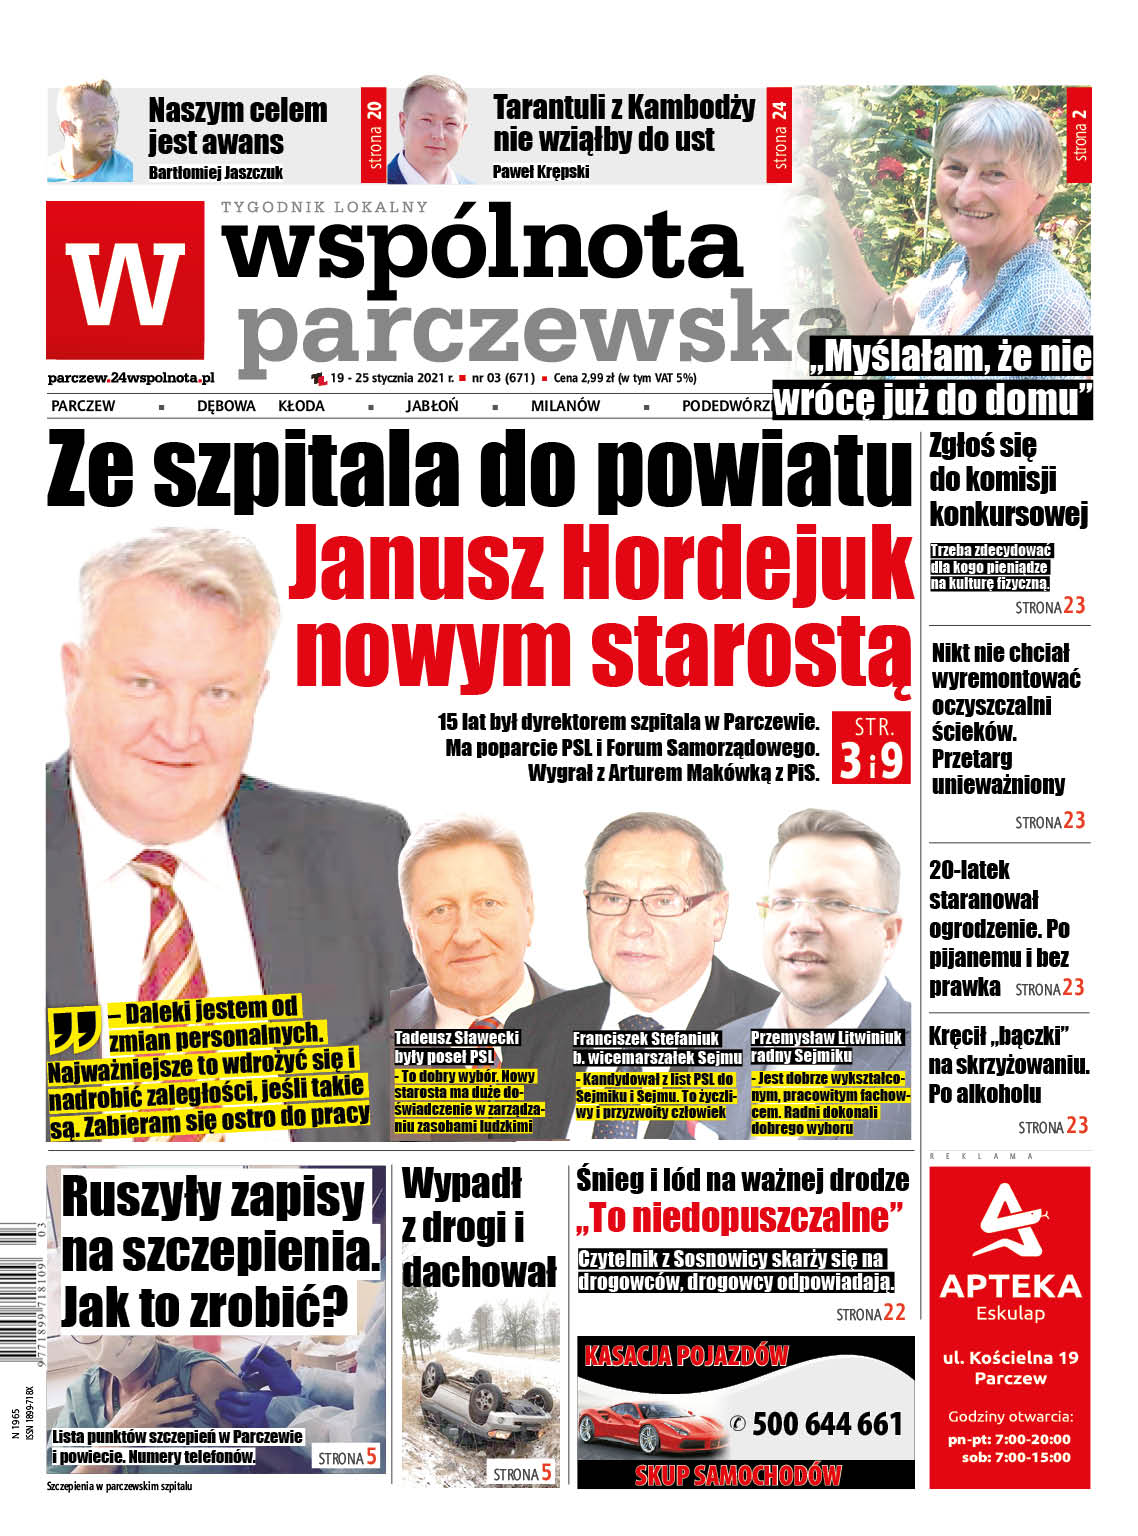 Janusz Hordejuk nowym starostą parczewskim - Zdjęcie główne